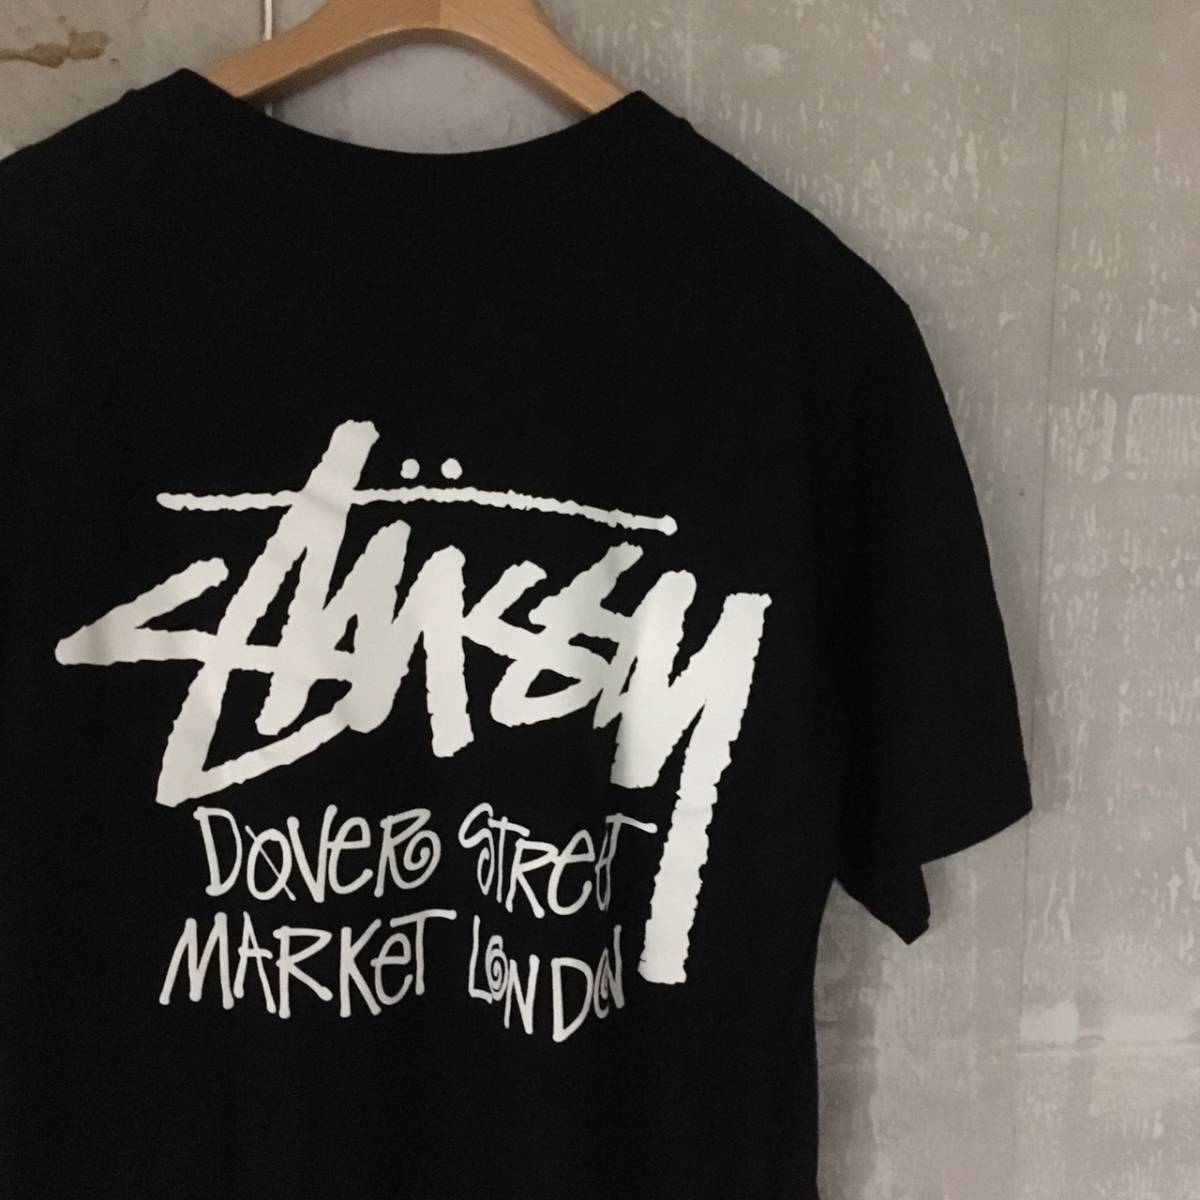 サイズS STUSSY DSML限定 黒 Tシャツ Dover street market London 